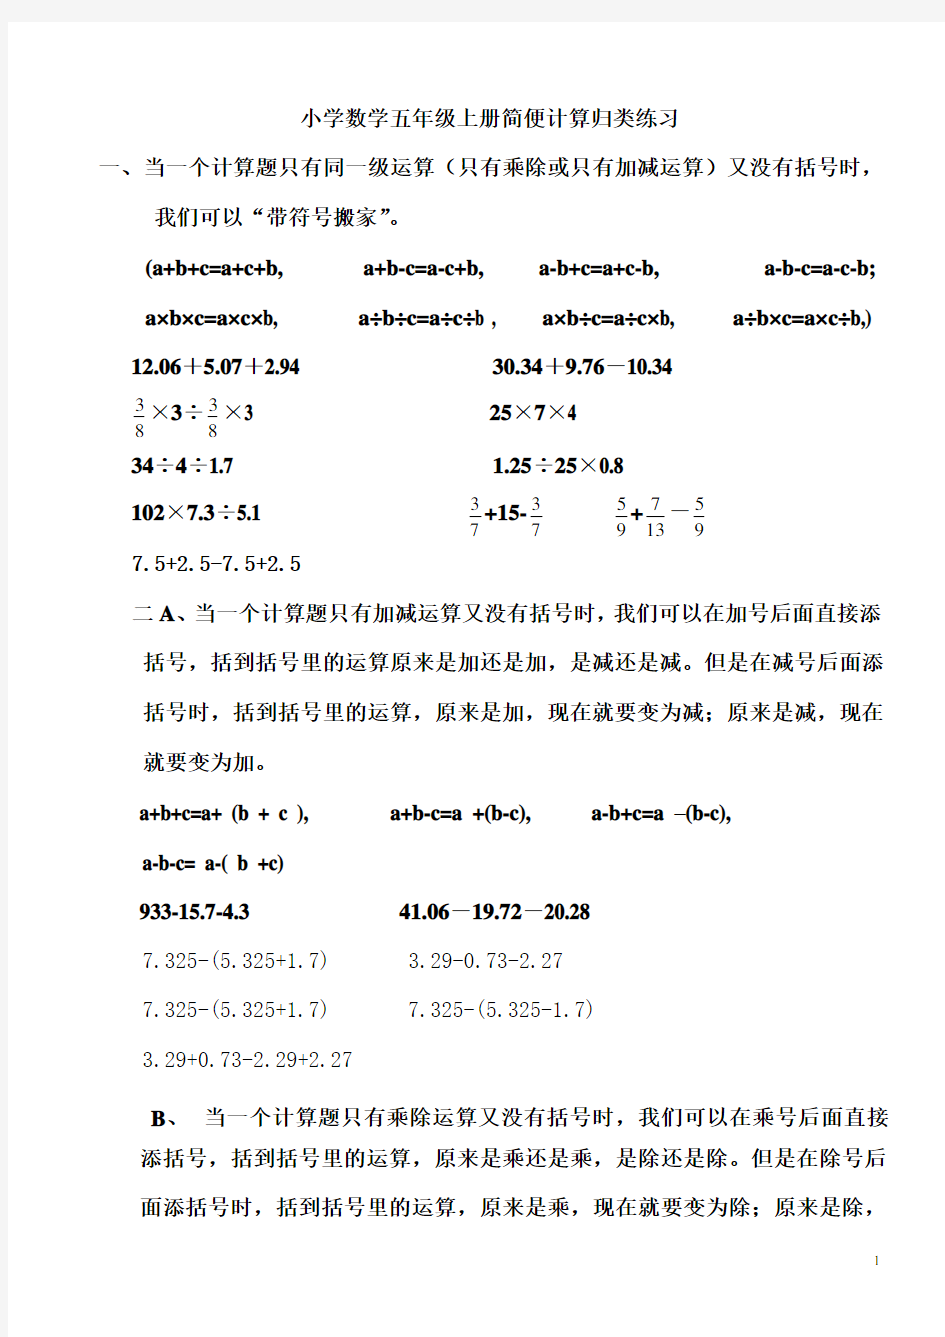 (完整)小学数学五年级上册简便计算练习题归类集锦